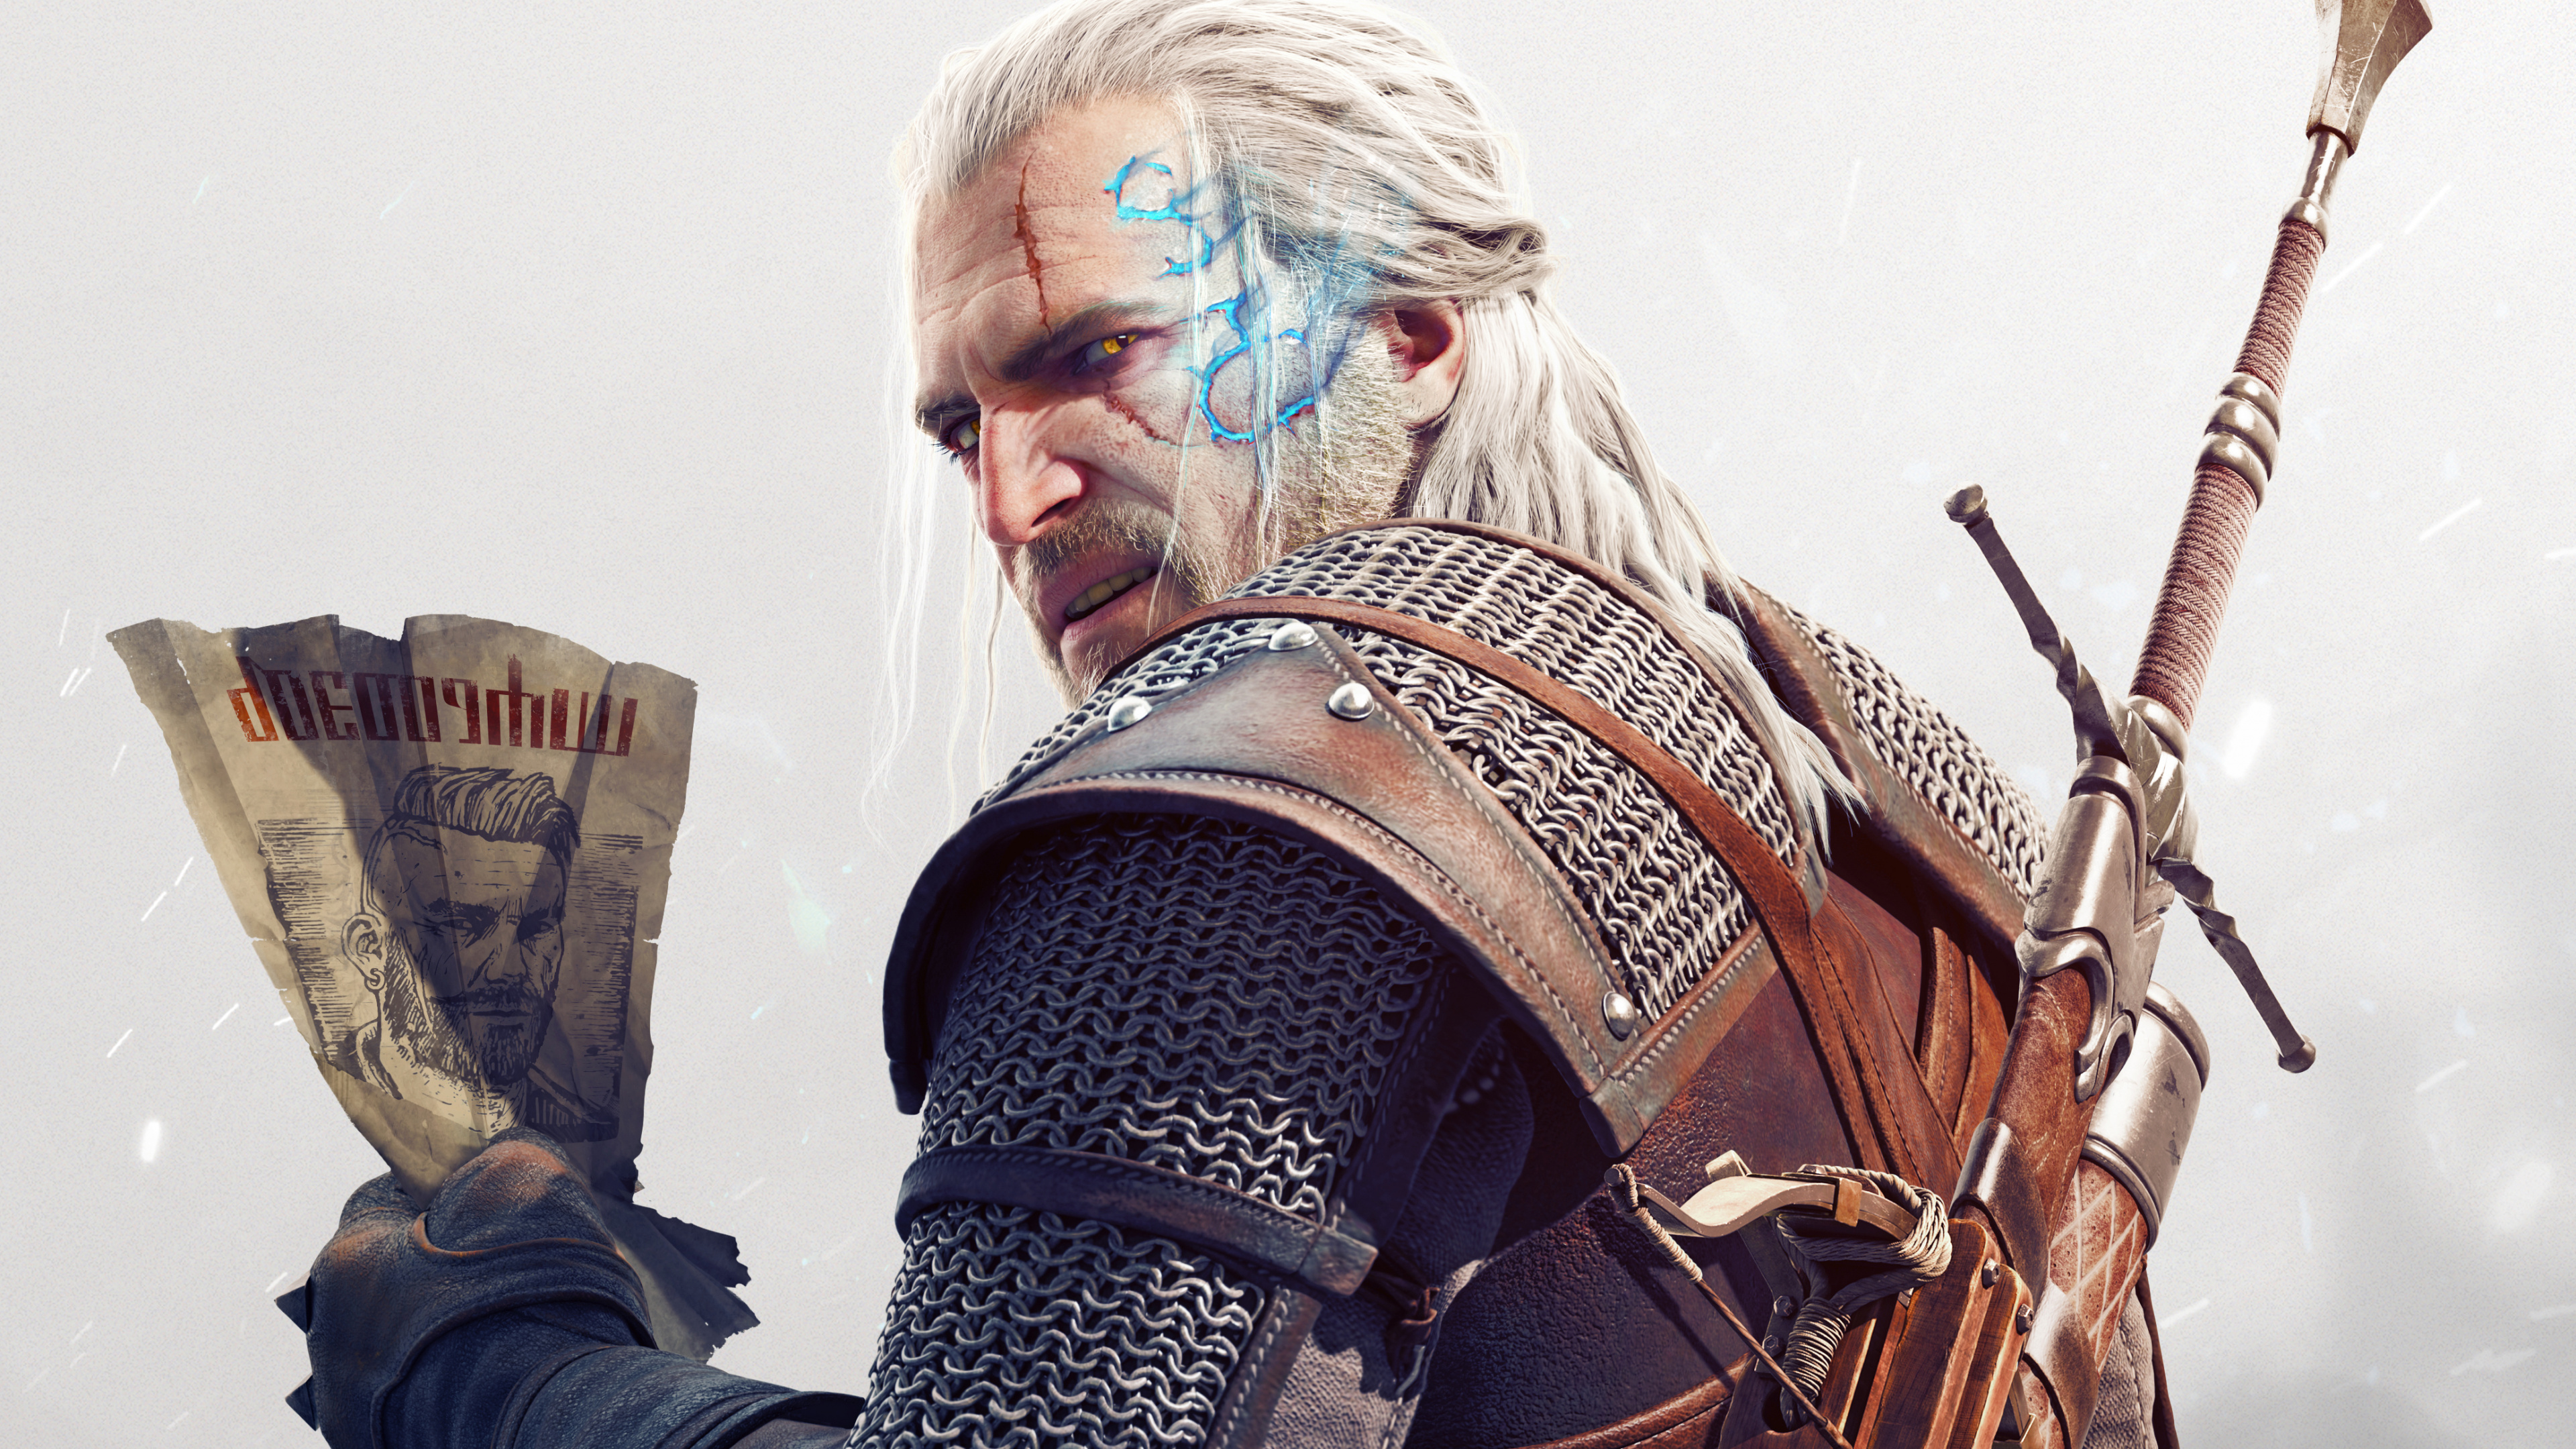 The Witcher 3 Wild Hunt, Geralt of Rivia, Beard, Facial Hair, Musician. Wallpaper in 3840x2160 Resolution